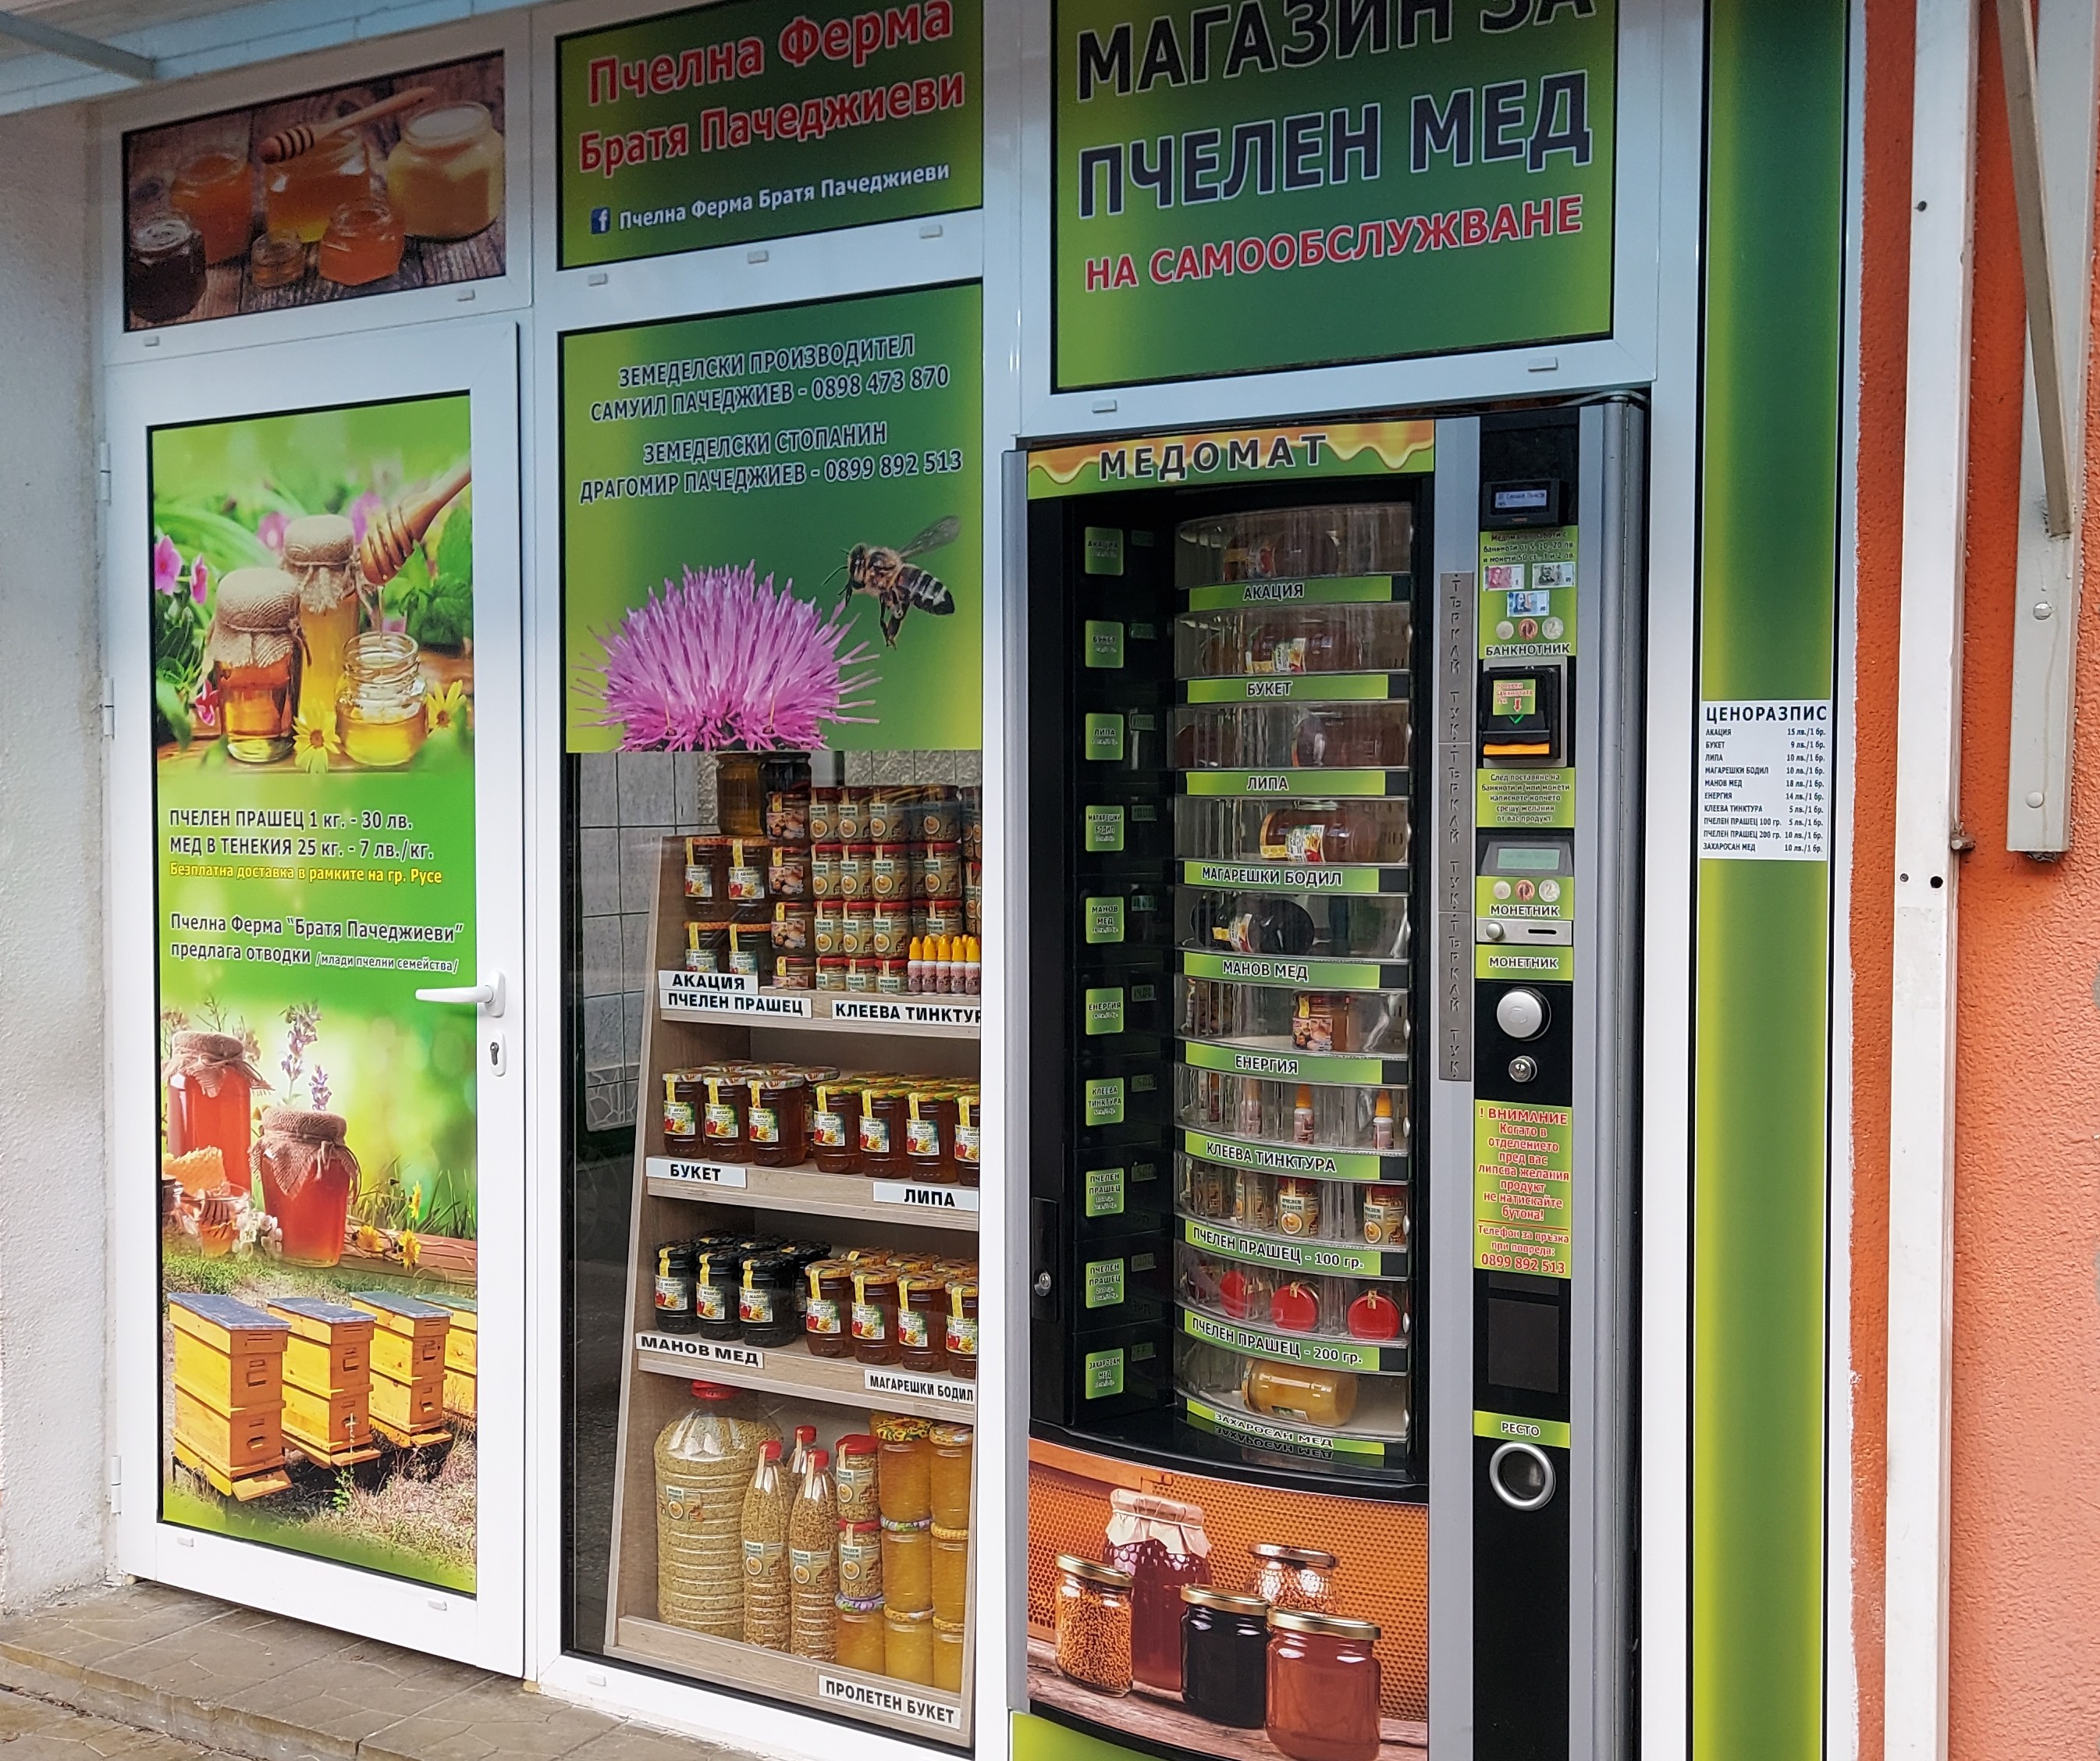    Семейна пчелна ферма братя Пачеджиеви отвори първия в Русе магазин за пчелен мед на самообслужване